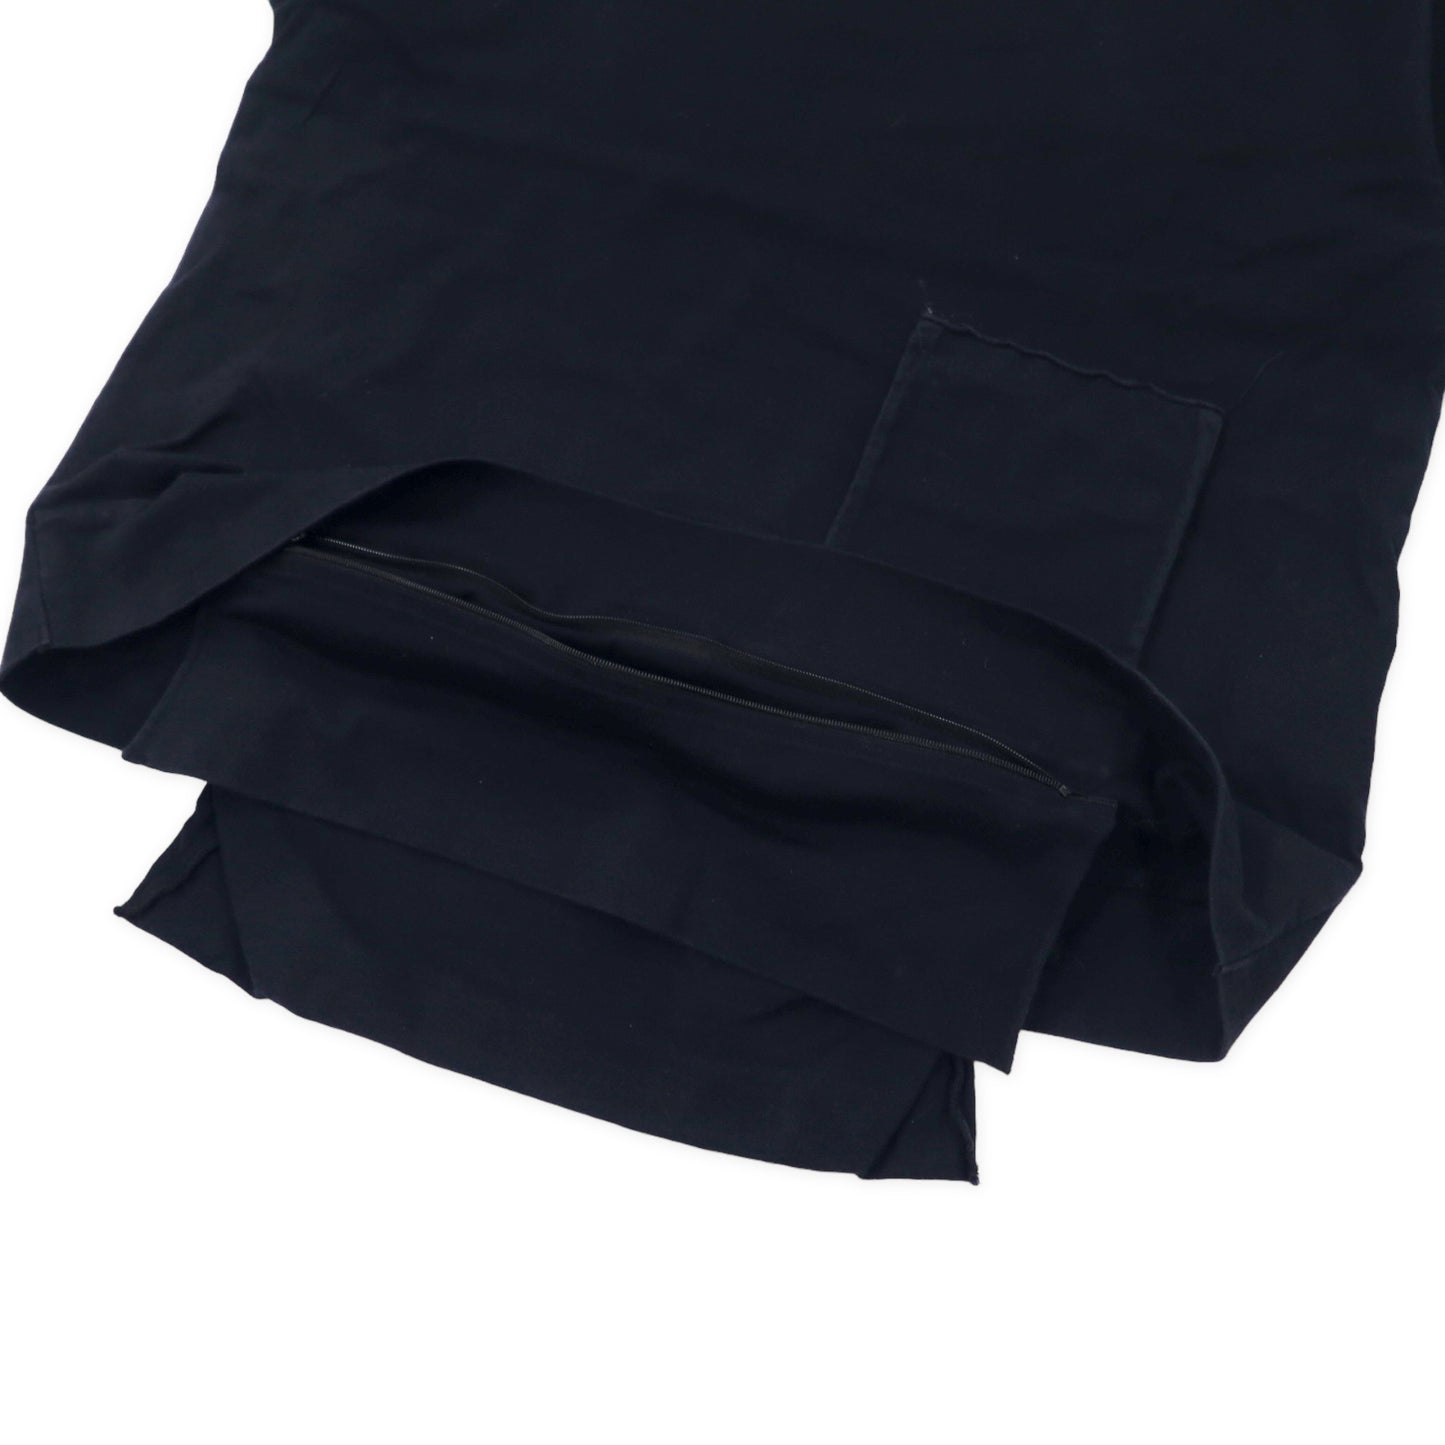 ambush ドッキング ロゴTシャツ 3 ブラック ポケット 12112078 日本製